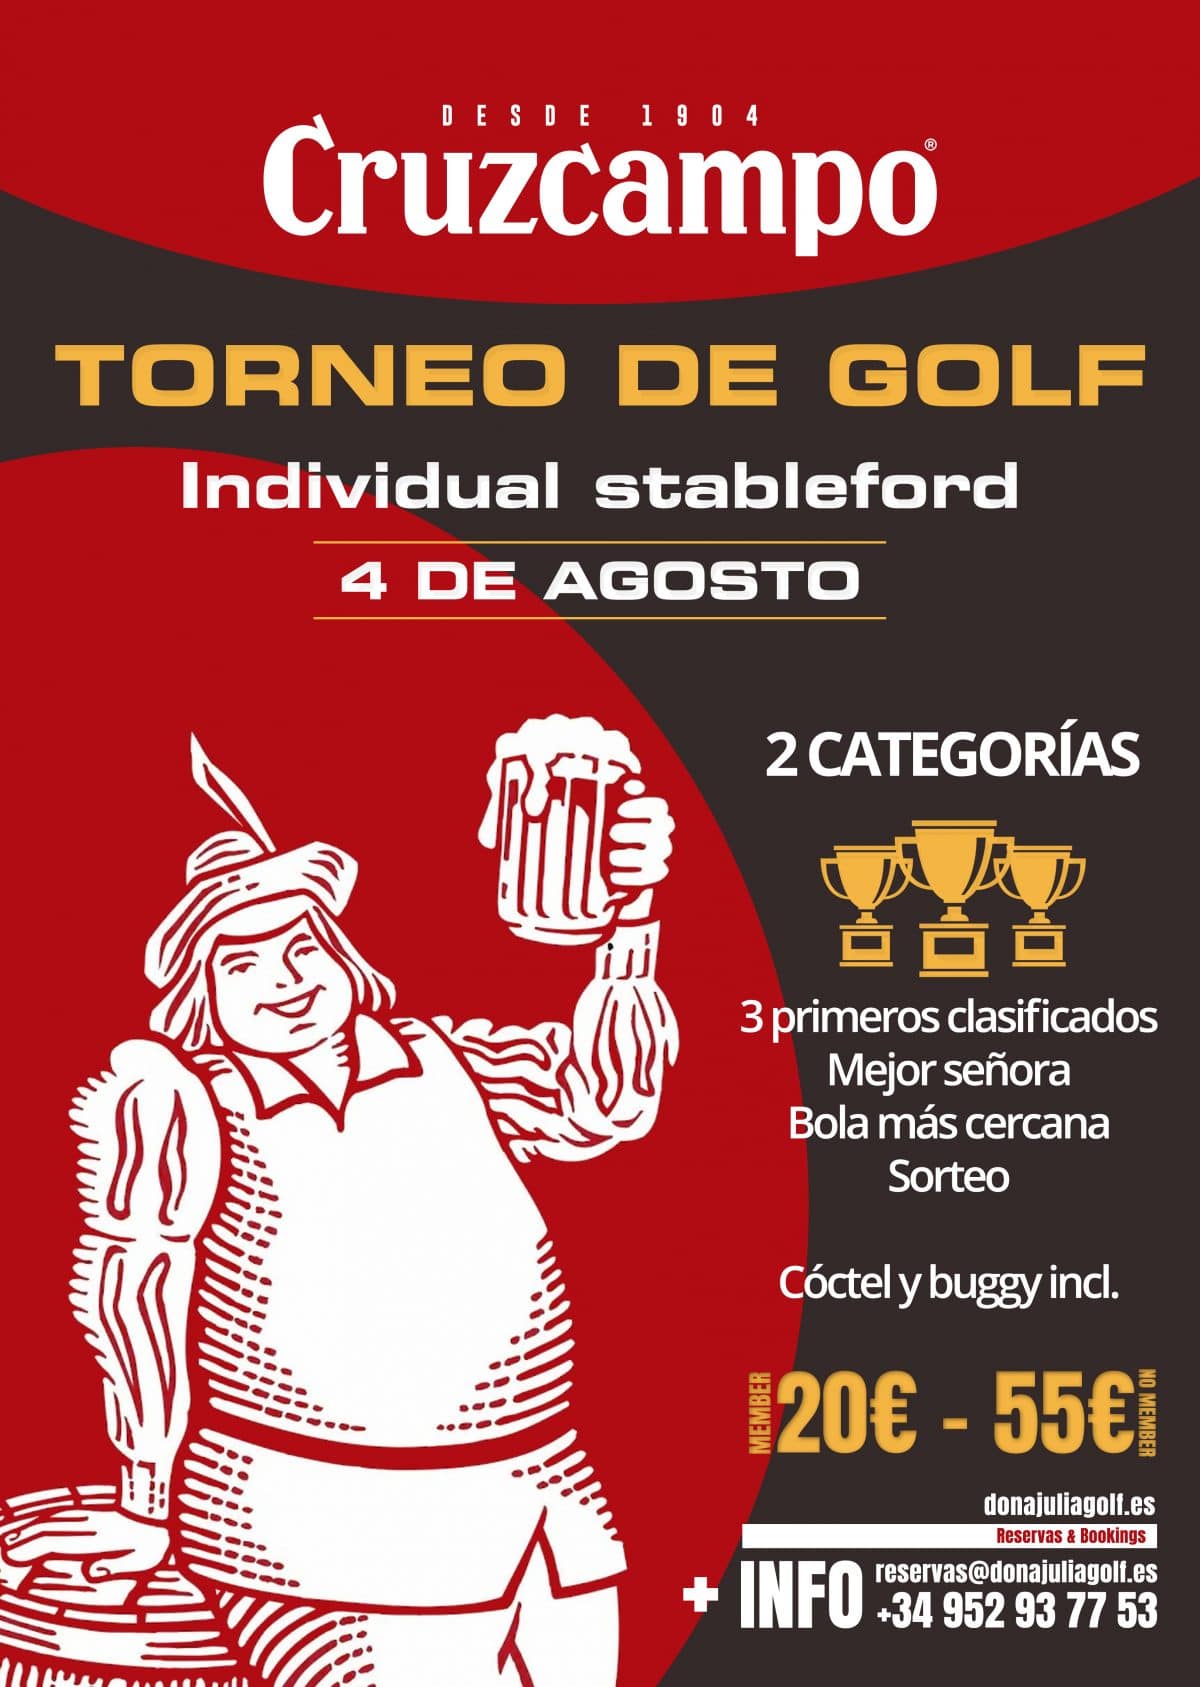 Cruzcampo Golf Tournament